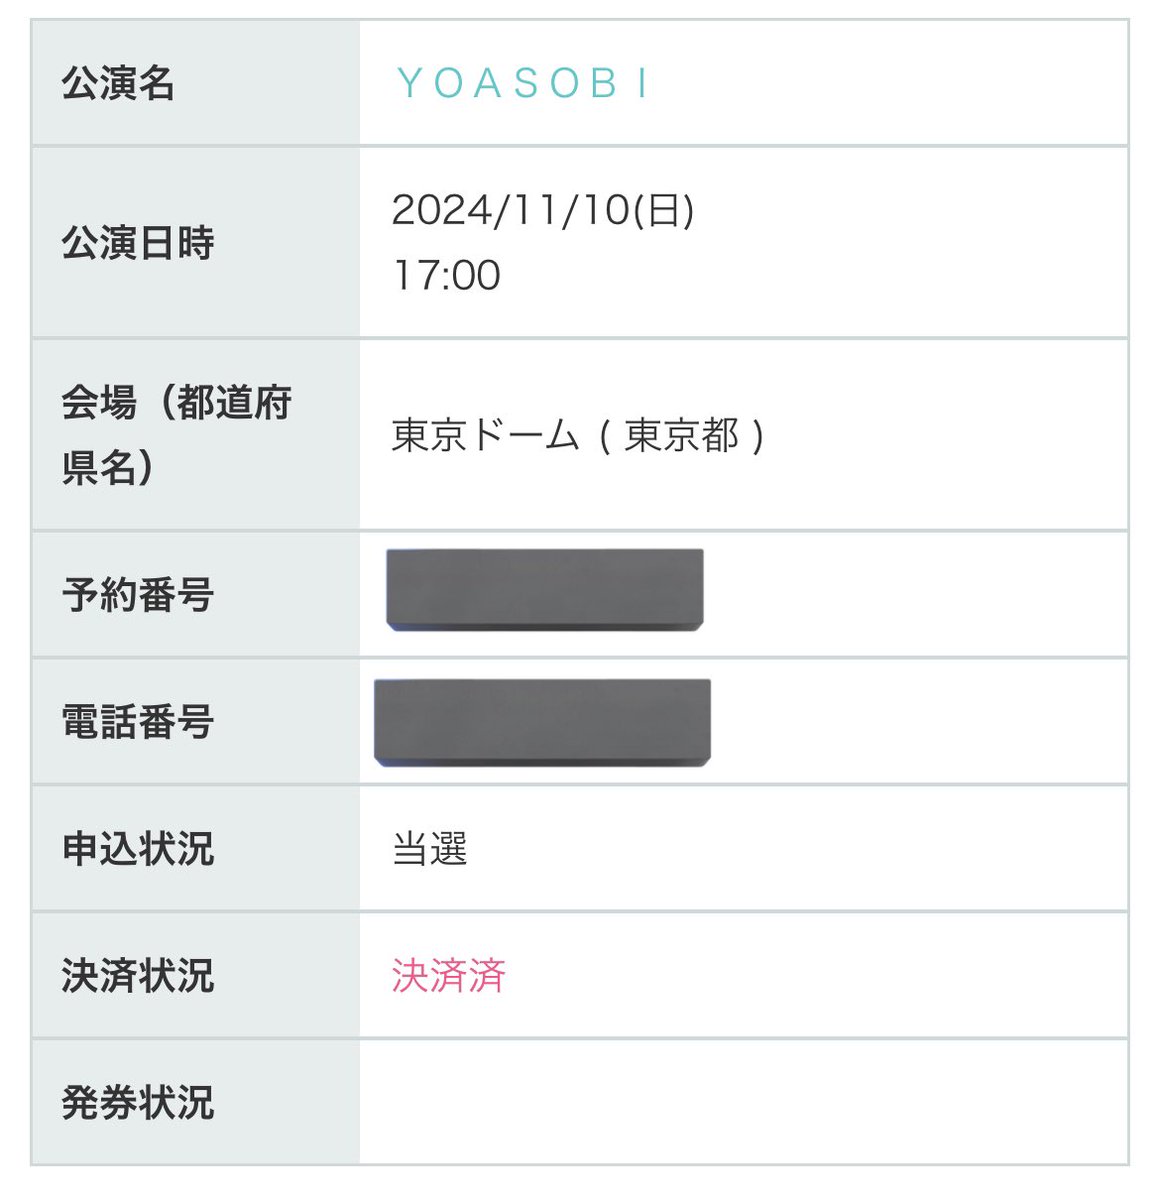 実は、東京公演もシリアルで応募していて見事に当選しました✨

これで自身初となる'全通'が確定しました🙌  東京と大阪、どっちも楽しむぞ🔥

#YOASOBI
#YOASOBIドーム